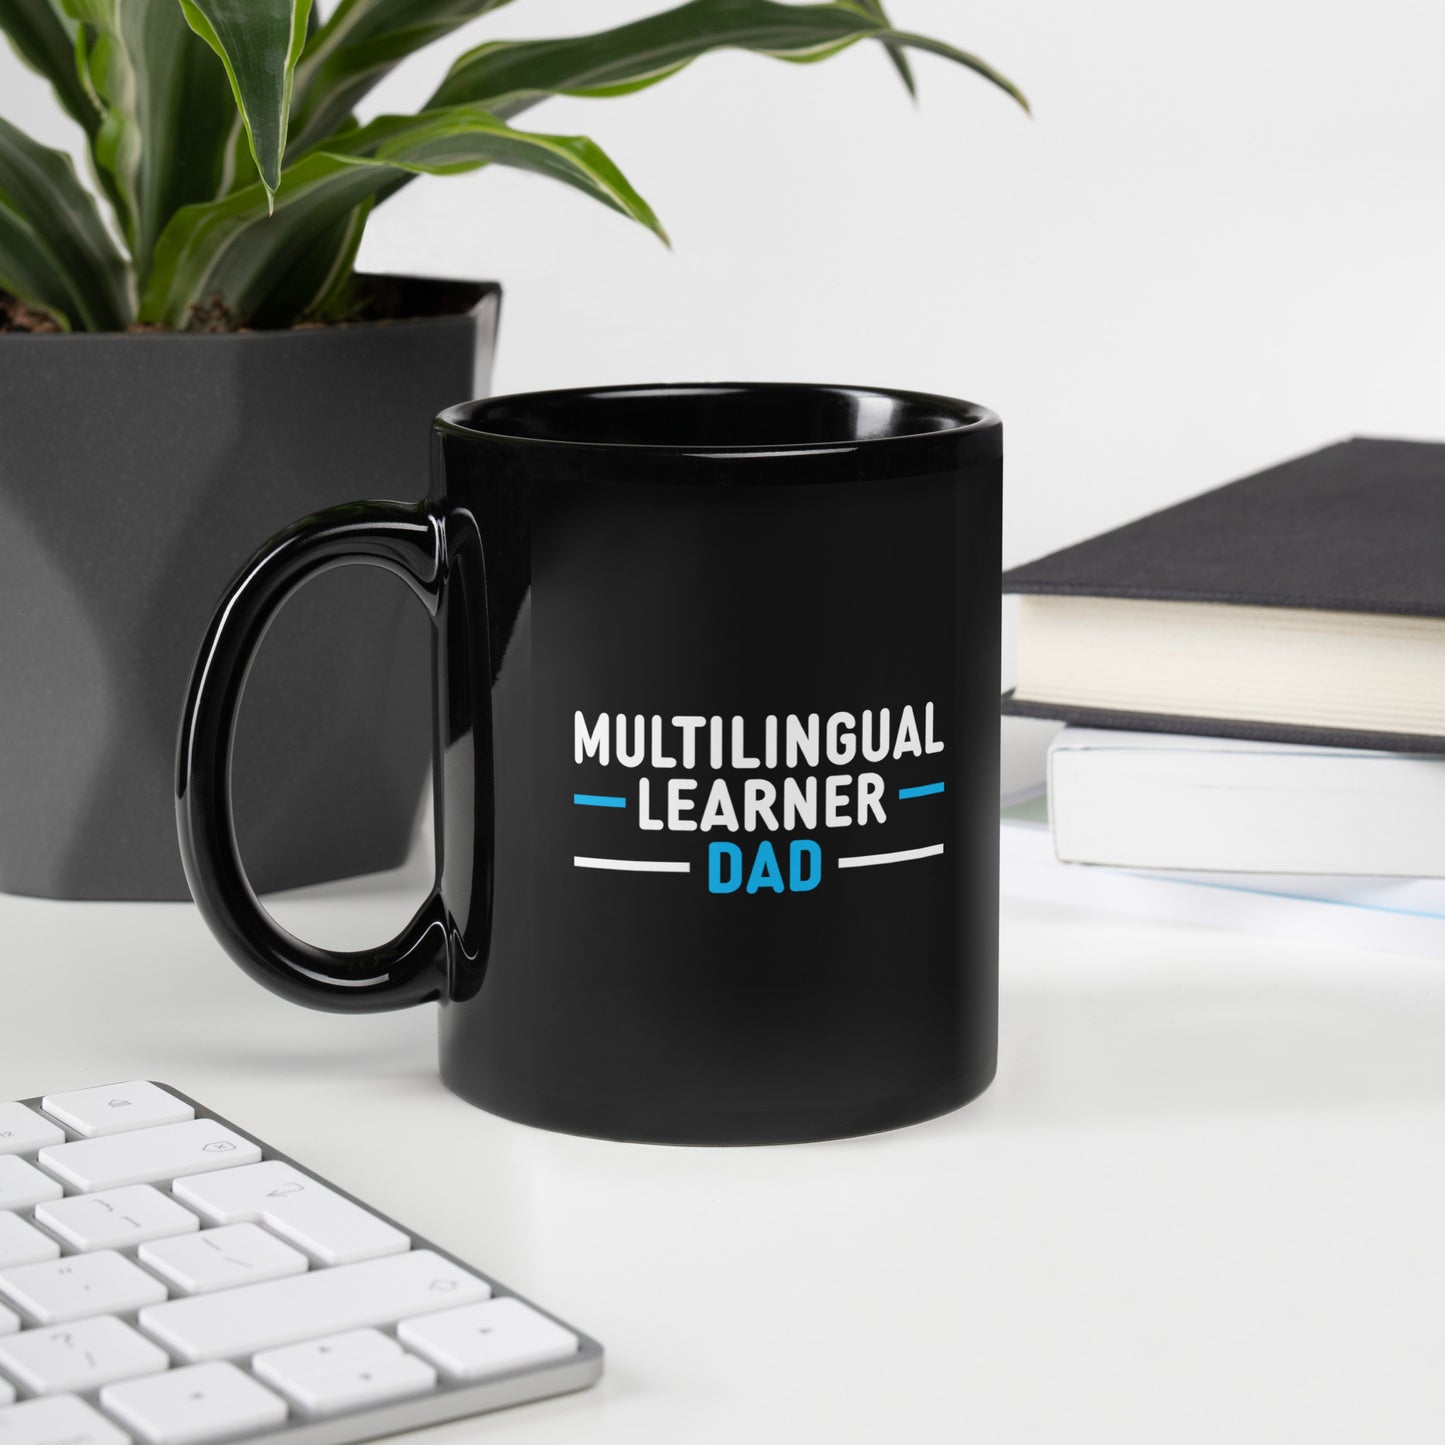 Multilingual Learner DAD  Black Glossy Mug.